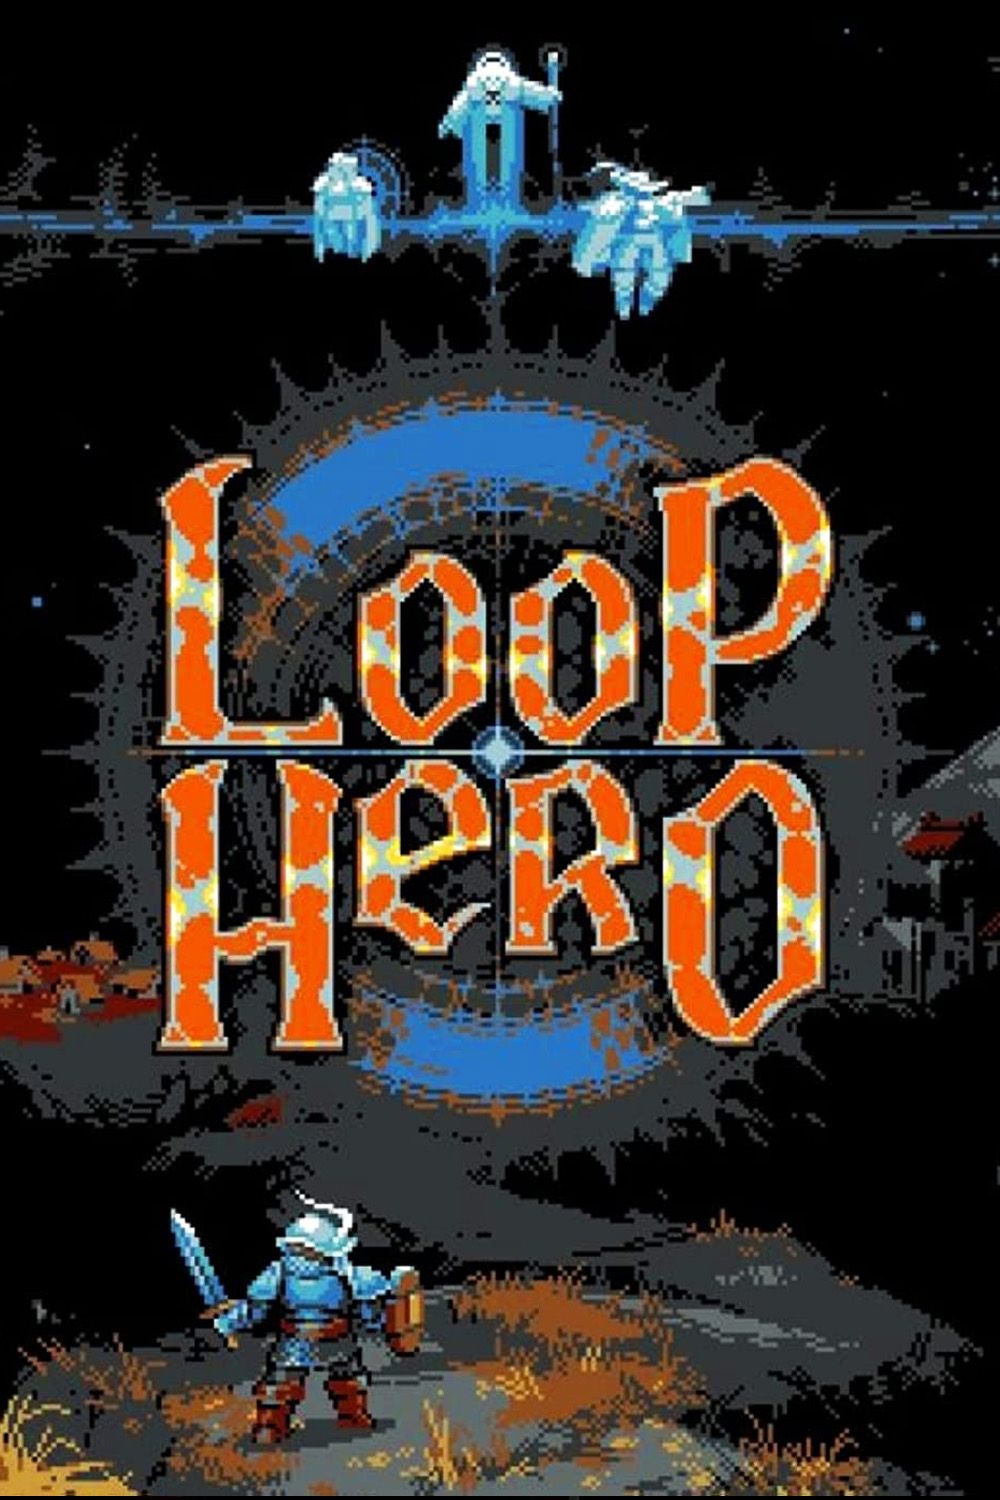 loop hero poster